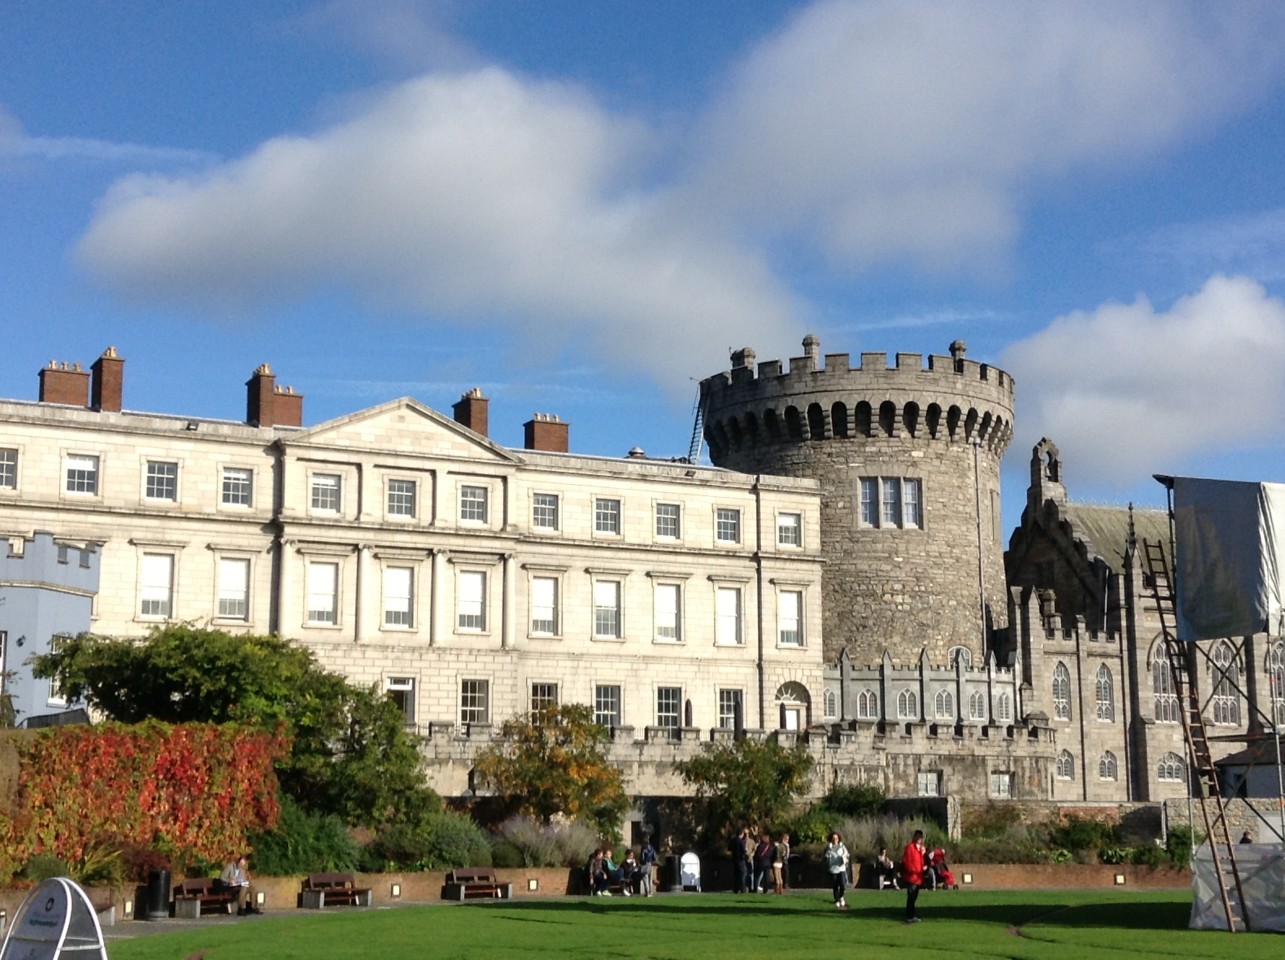 Dublin Castle on a blue sky day